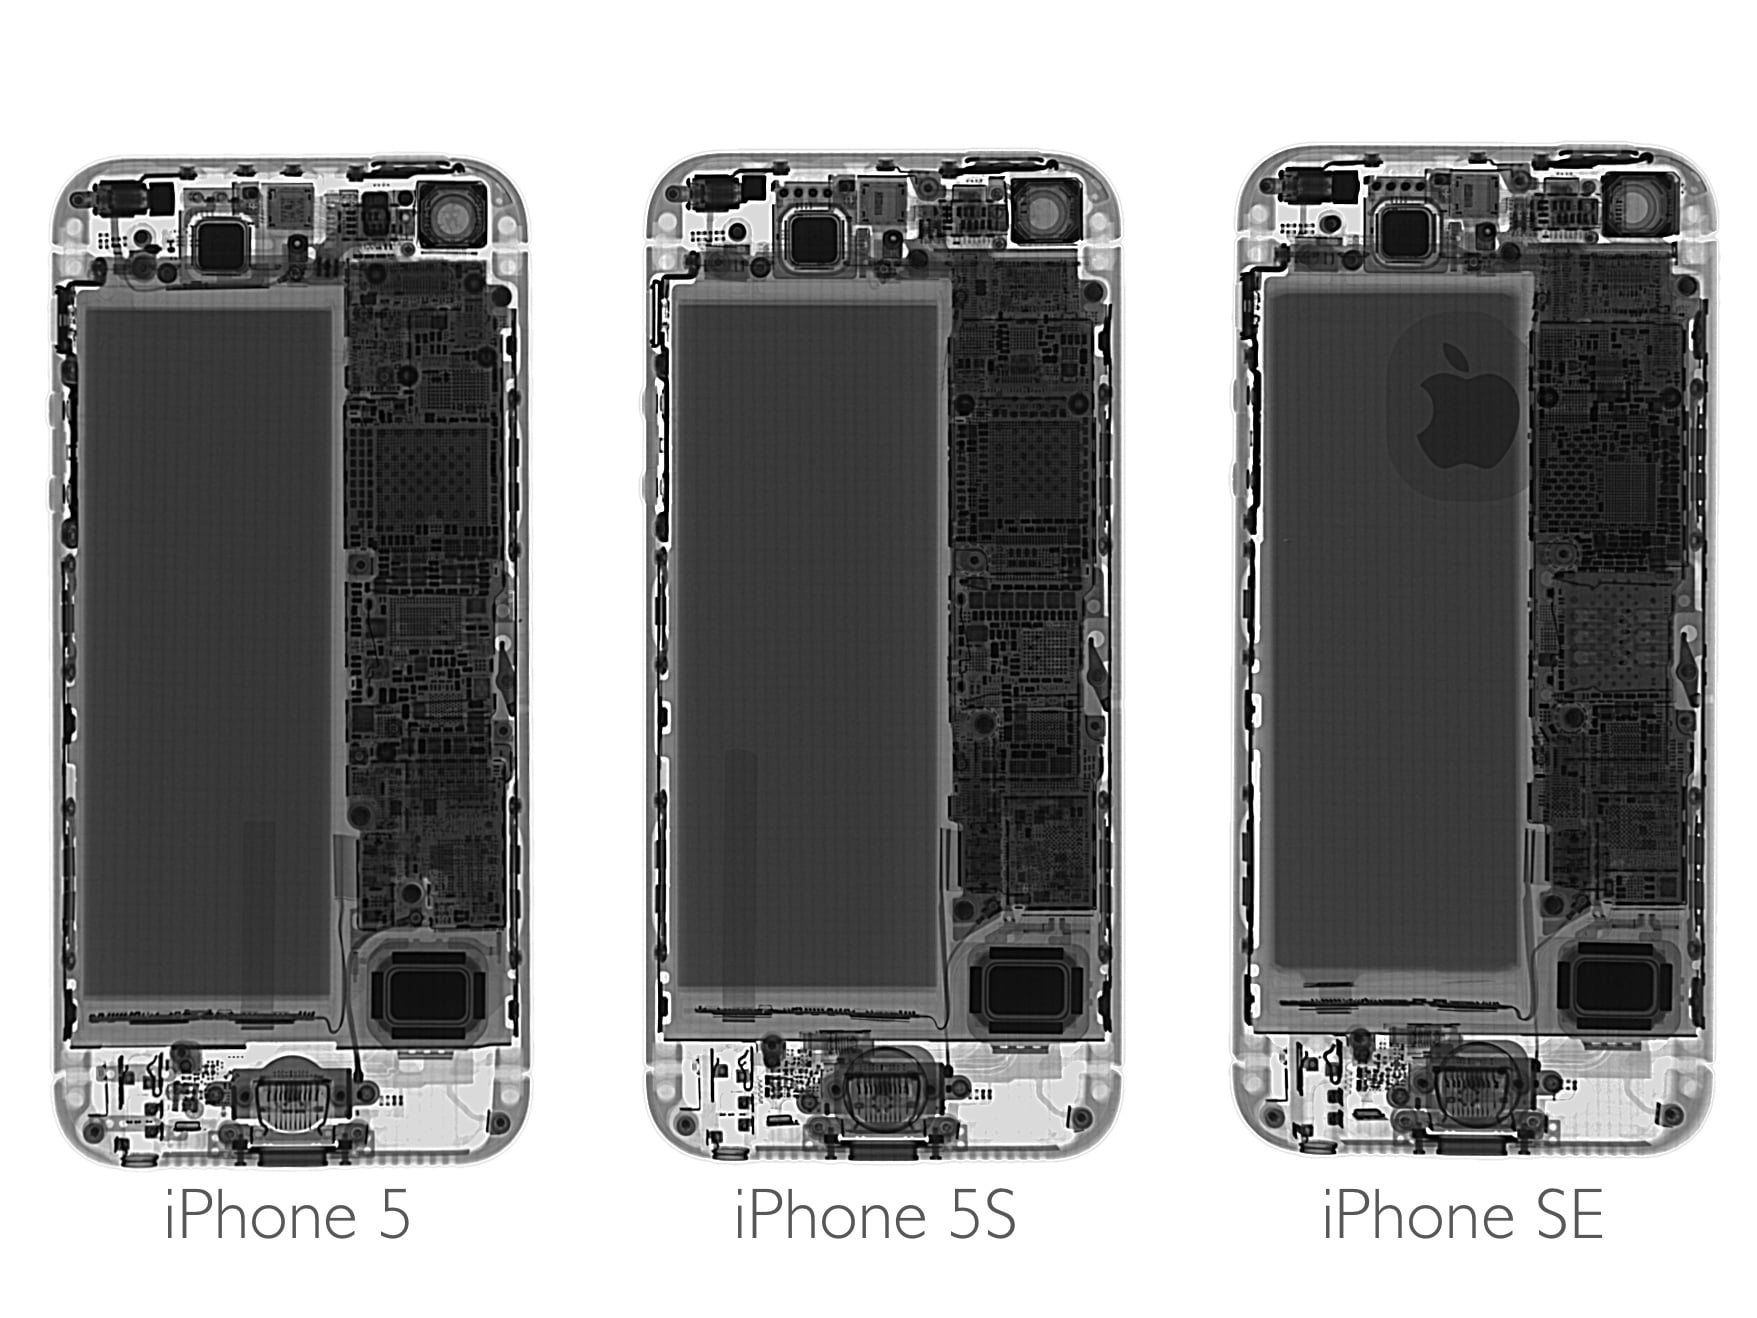 Iphone Se の分解レポ 設計は Iphone 5s と殆ど同じで素人でも